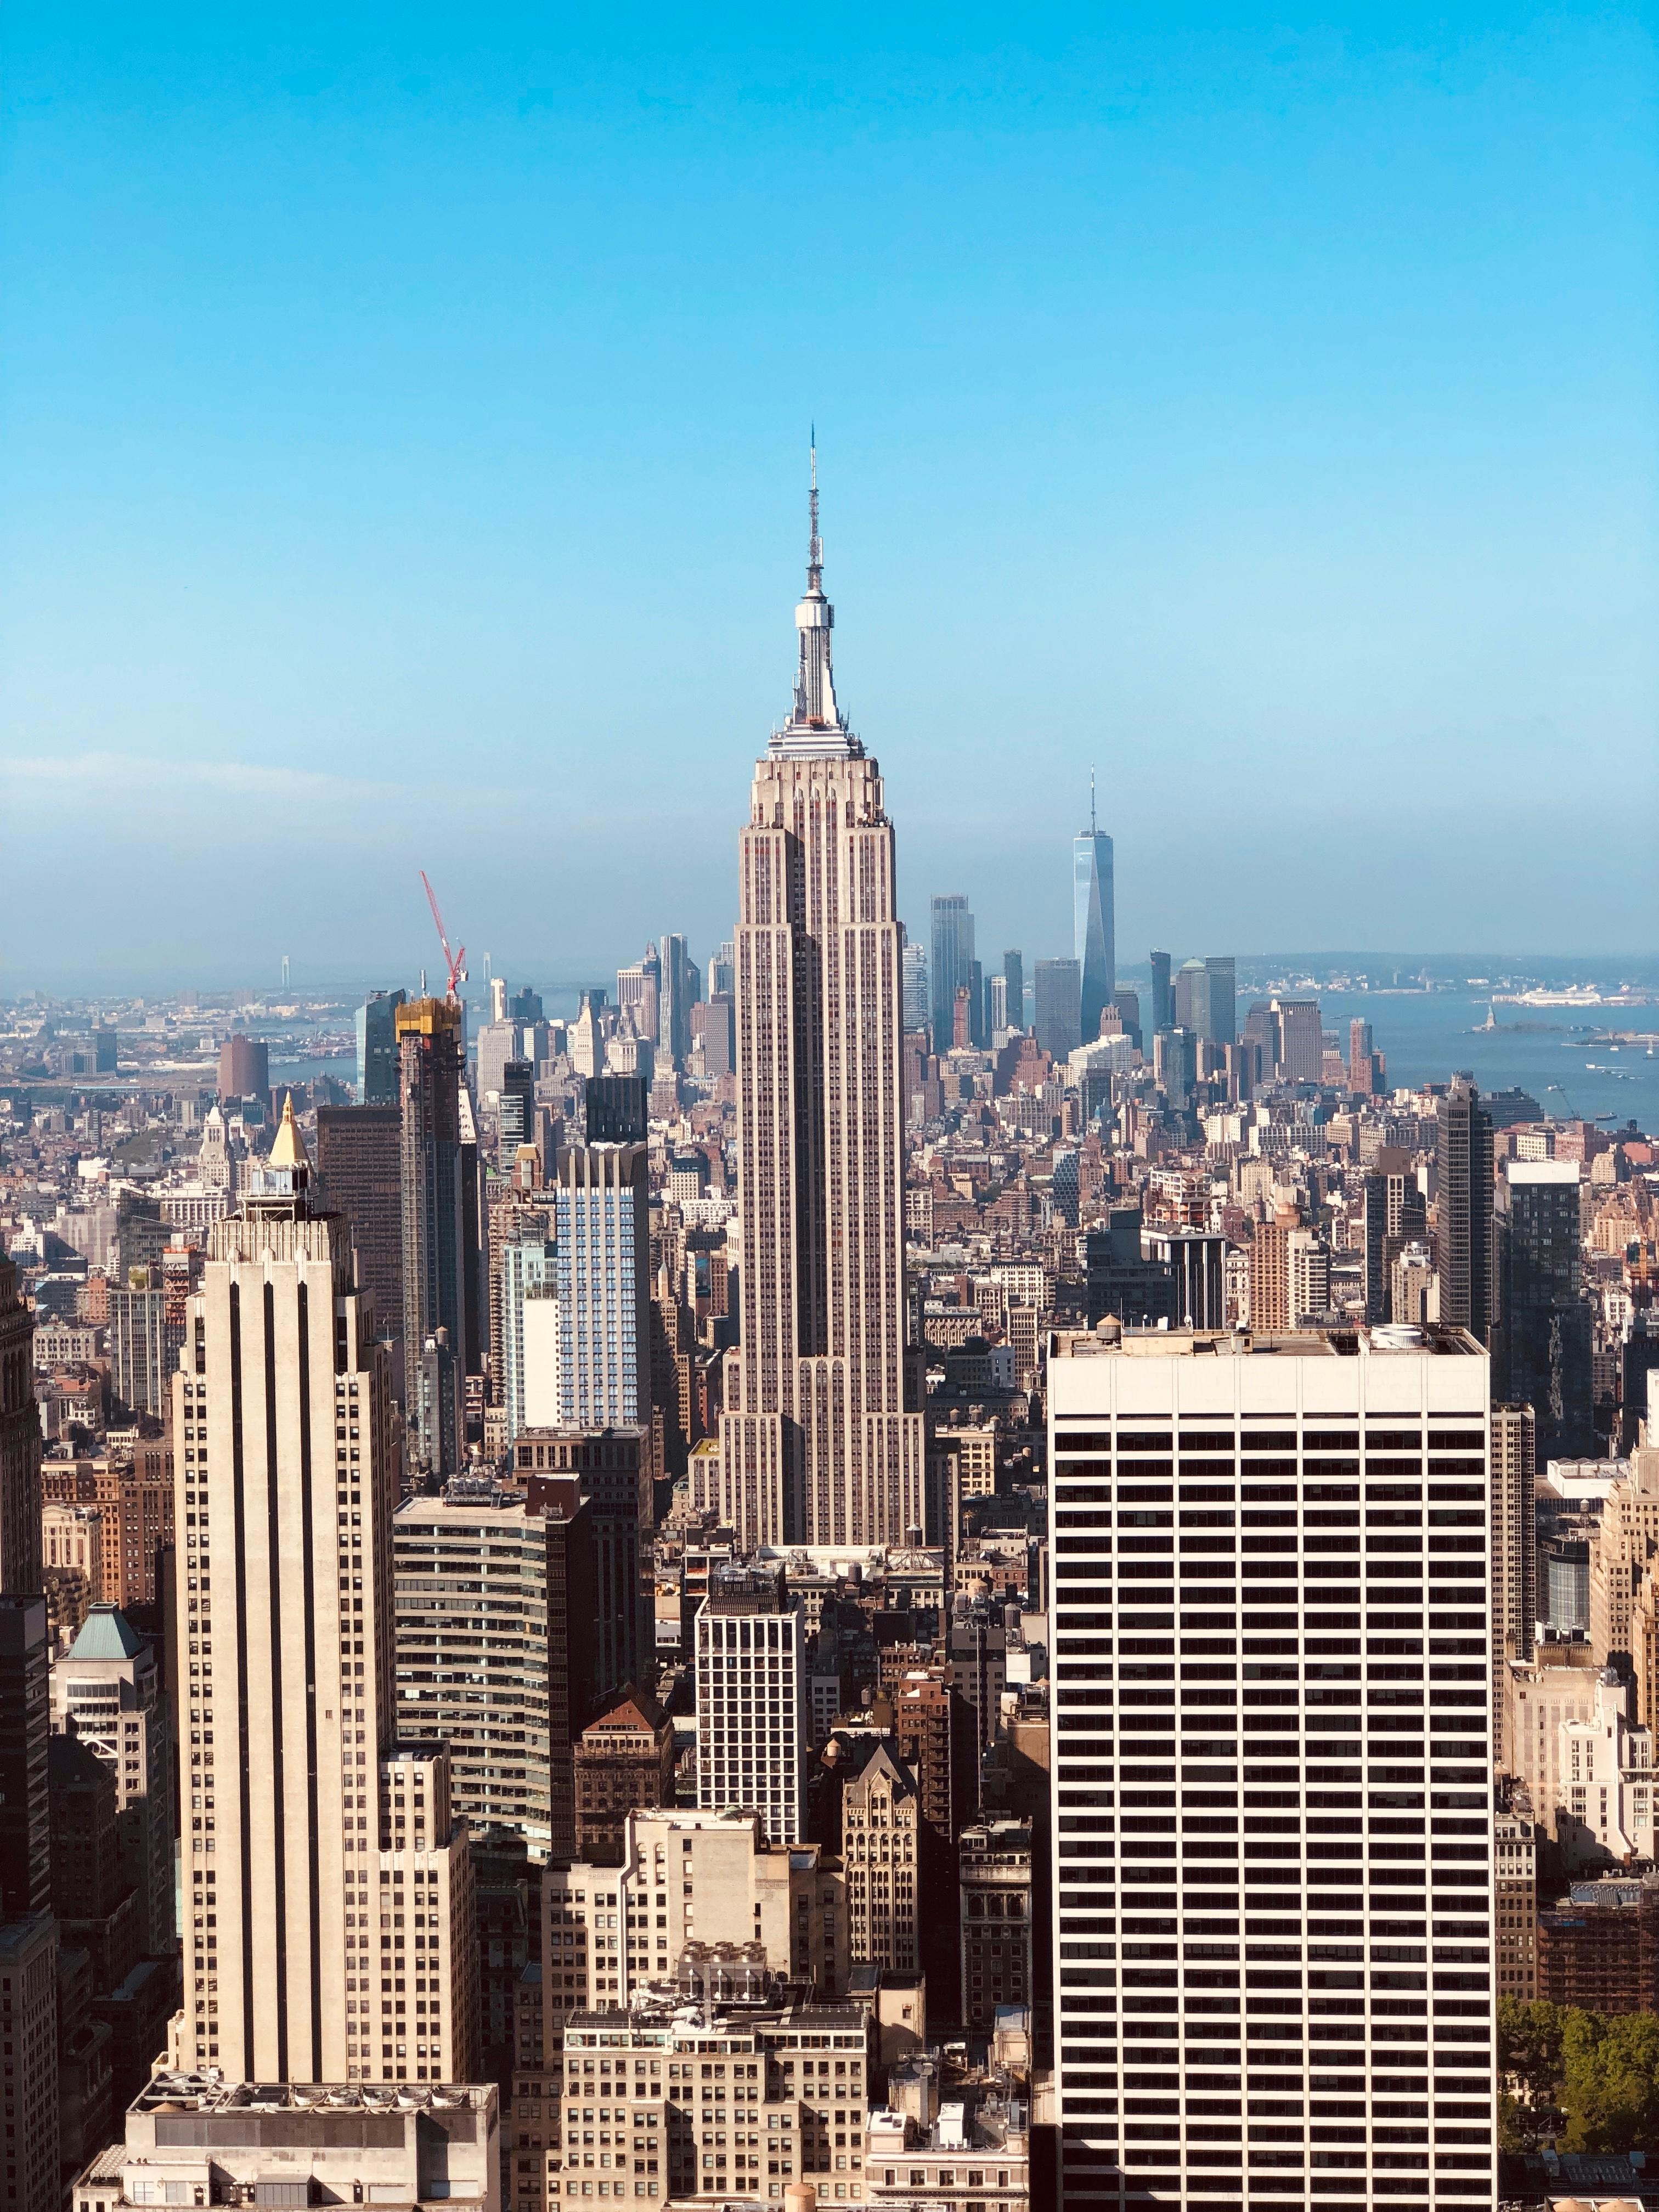 2019 ist unser Traum wahr geworden 😍 #urlaub #inlove #NYC #newyork #reisen #bigapple #meetthecommunity